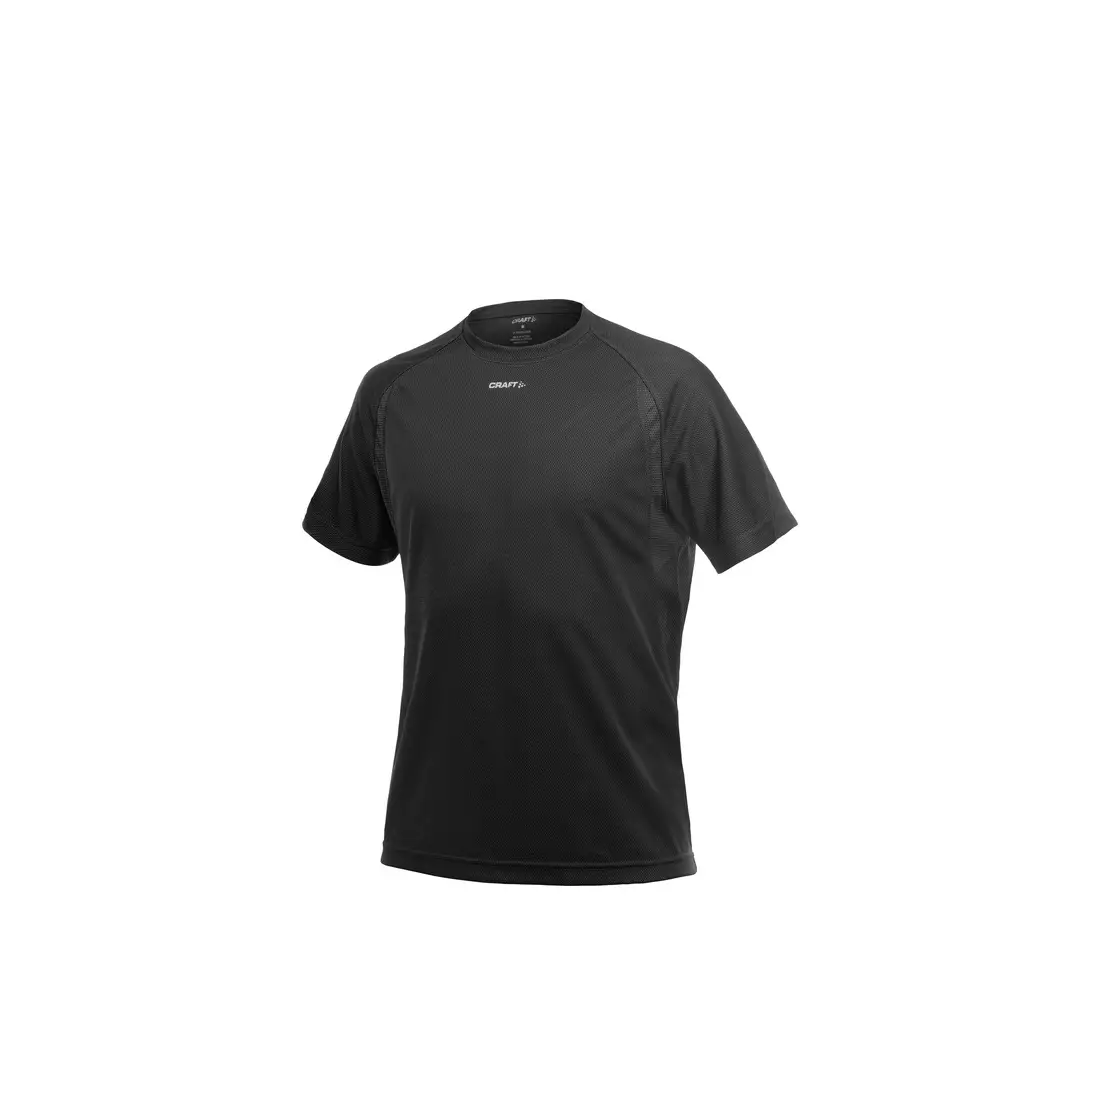 CRAFT ACTIVE RUN 1900655-9999 - pánské běžecké tričko